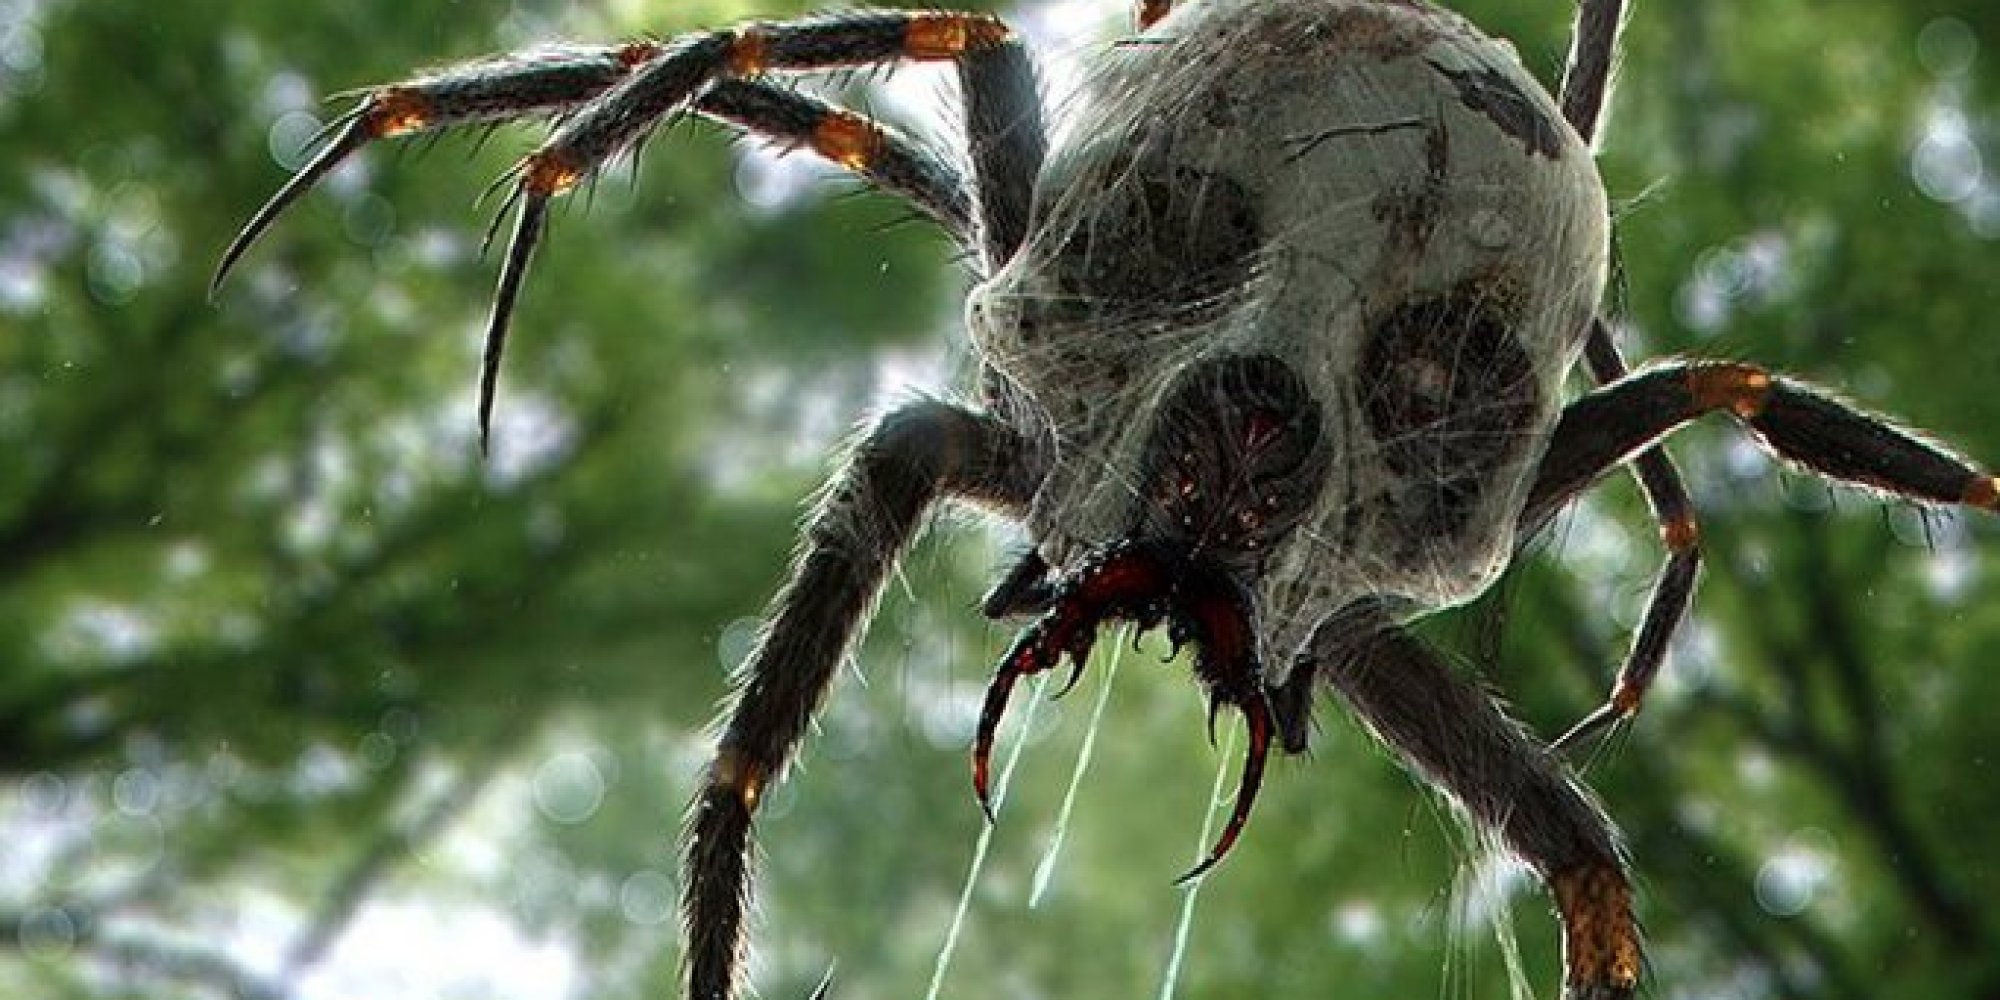 Страшный мир насекомых. Джейба Фофи. Паук Huntsman Spider. Каракурт птицеед. Цербал Аравийский паук.